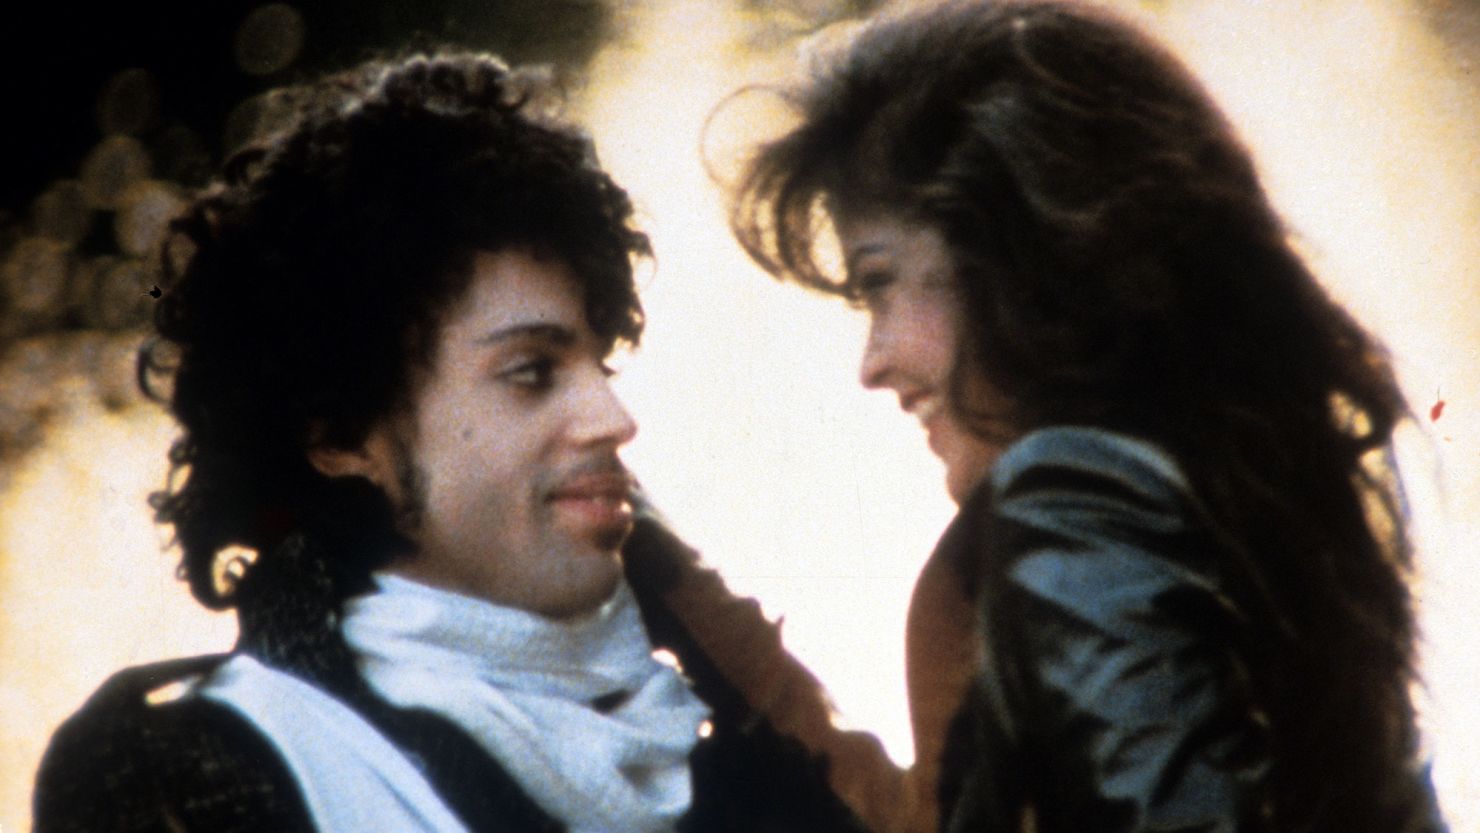 Prince embraces Apollonia Kotero in a scene from the film 'Purple Rain', 1984.